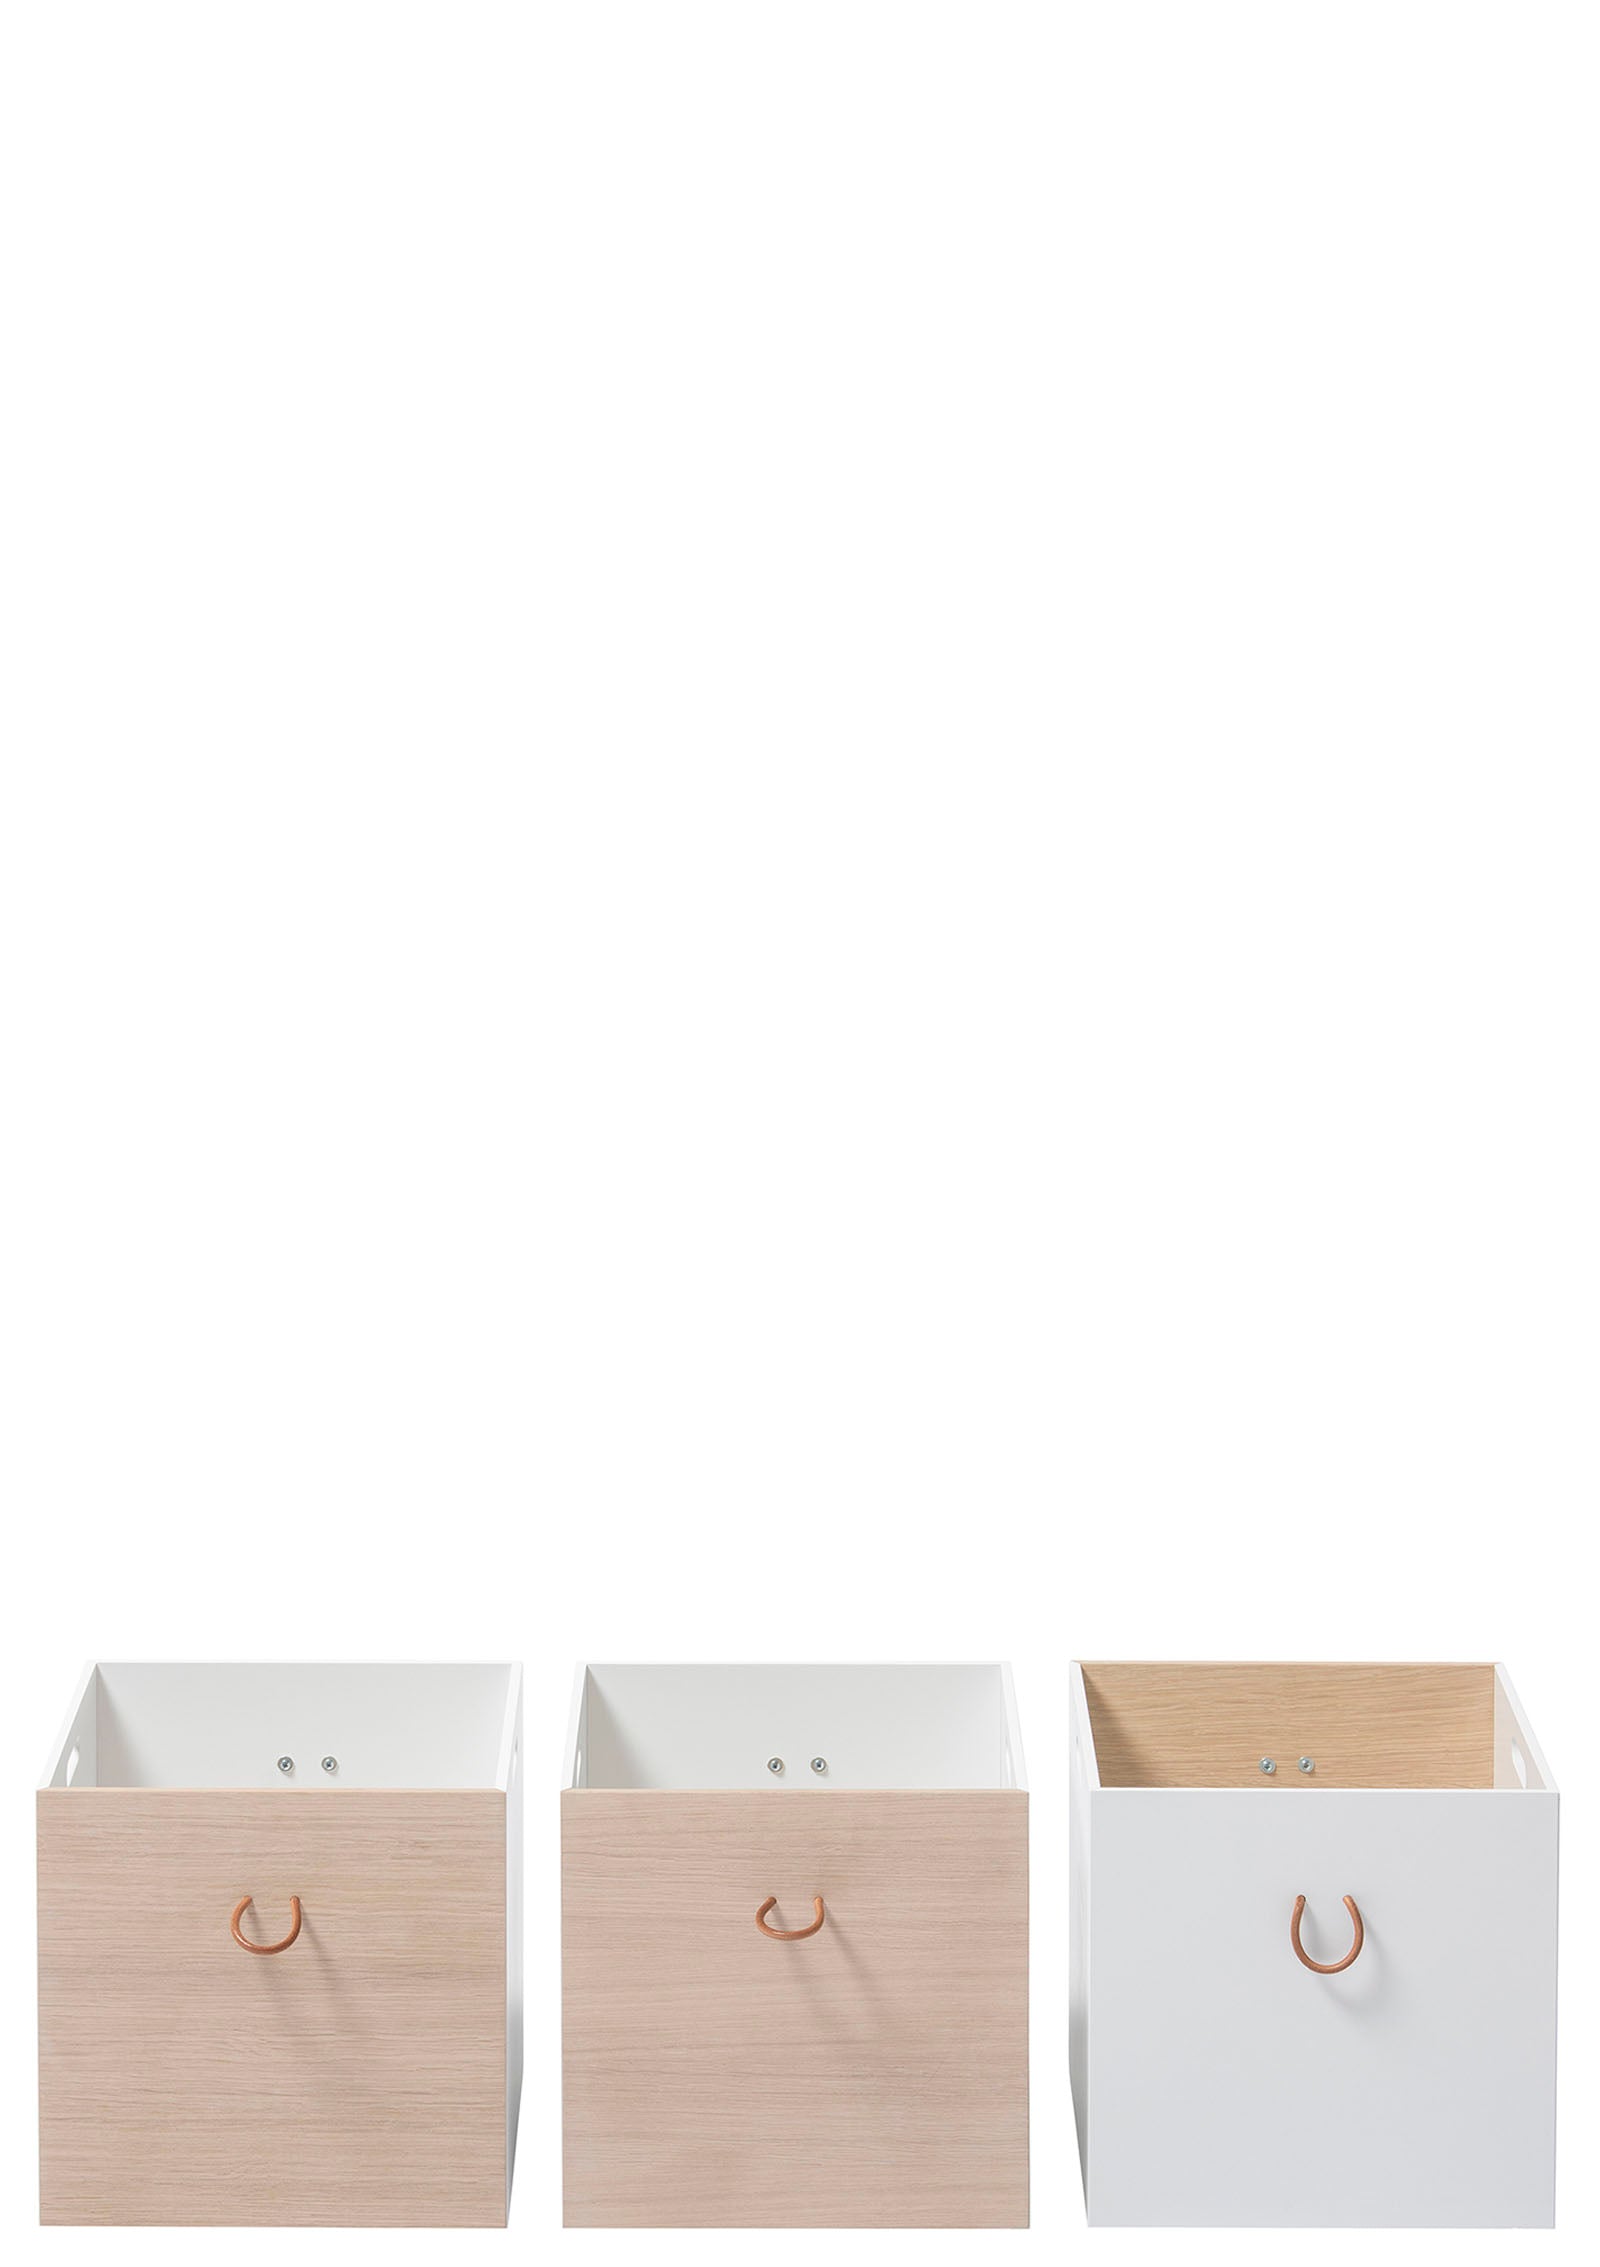 Oliver Furniture Wood Kisten weiß/eiche